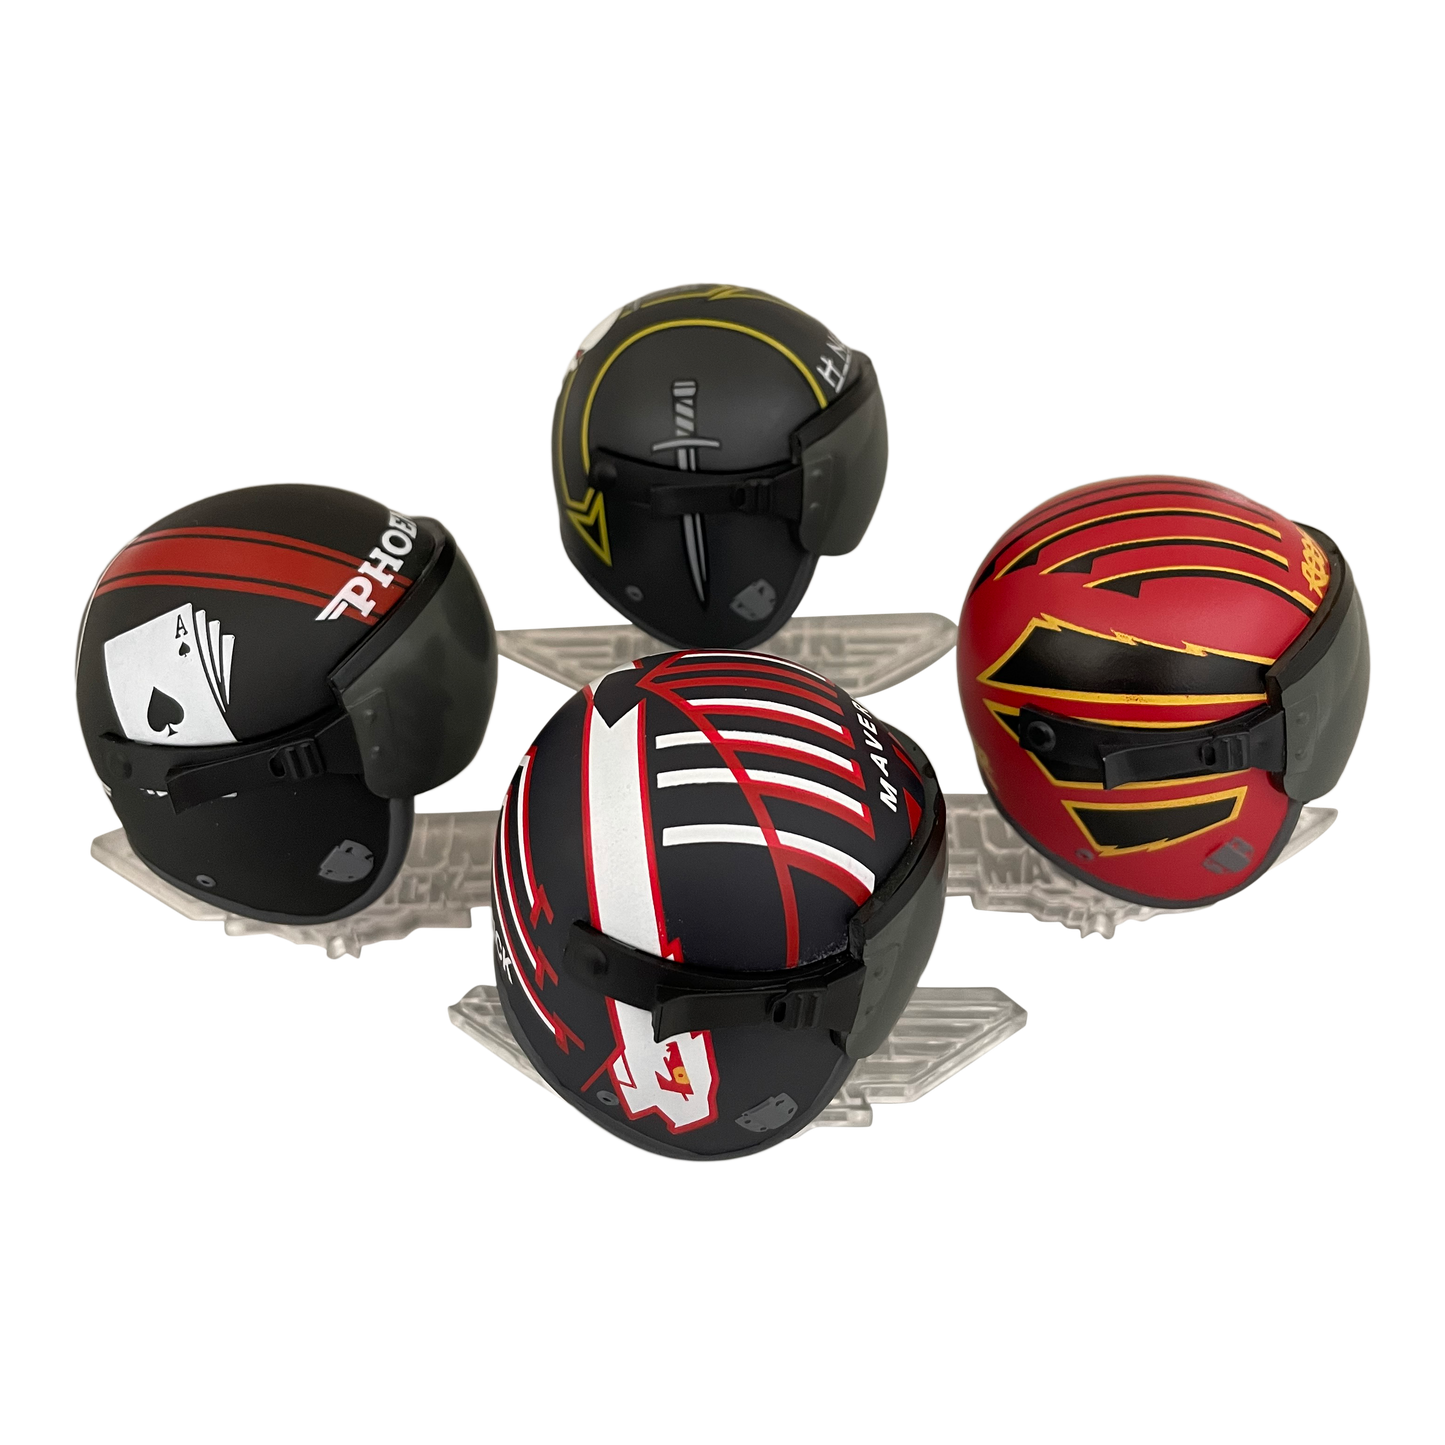 Top Gun Maverick Mini Helmets Box Set - Available 4th Quarter 2022 - Icon Heroes 